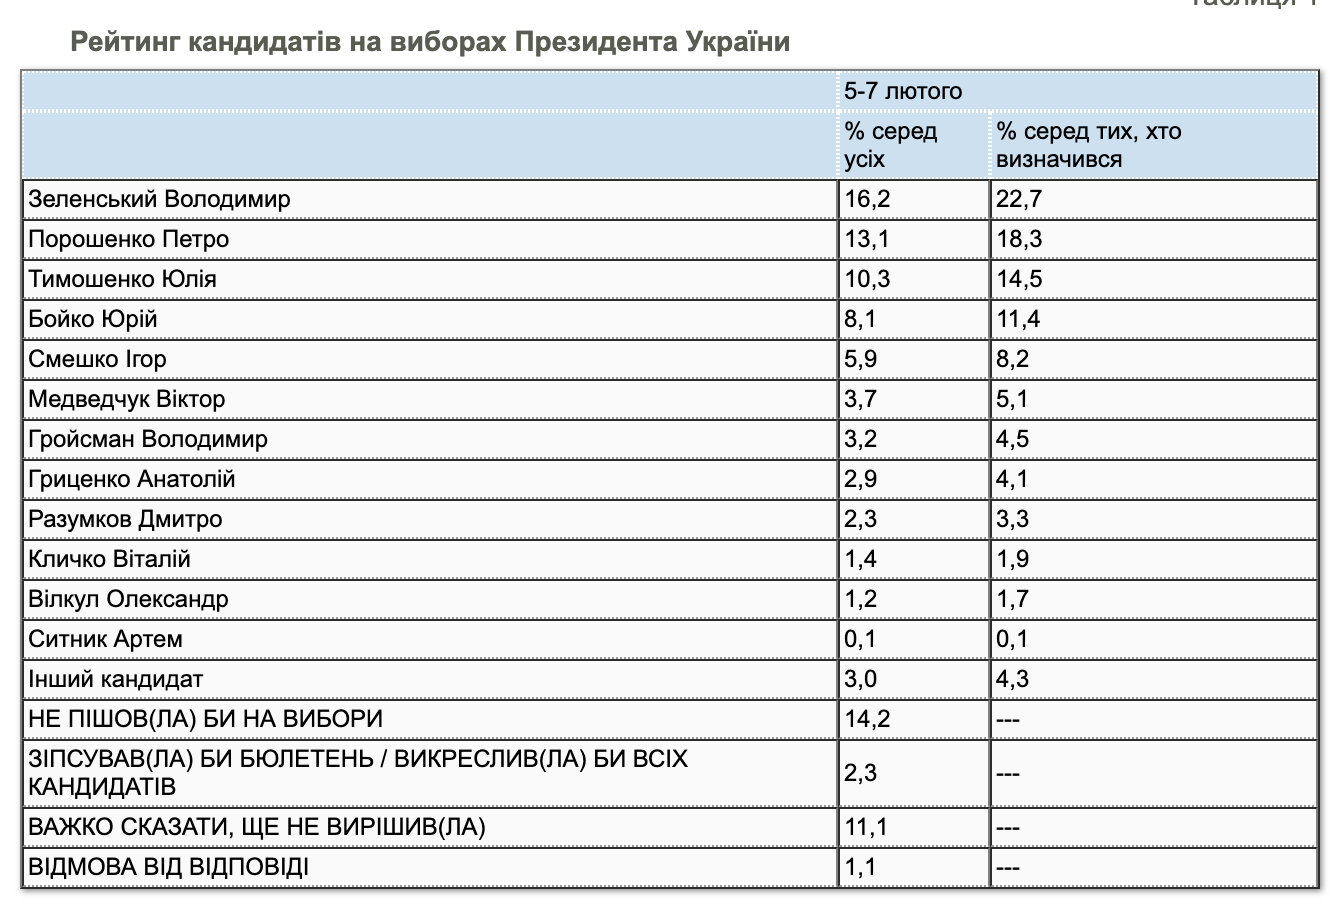 Опубликован свежий президентский рейтинг: Зеленского догоняет Порошенко